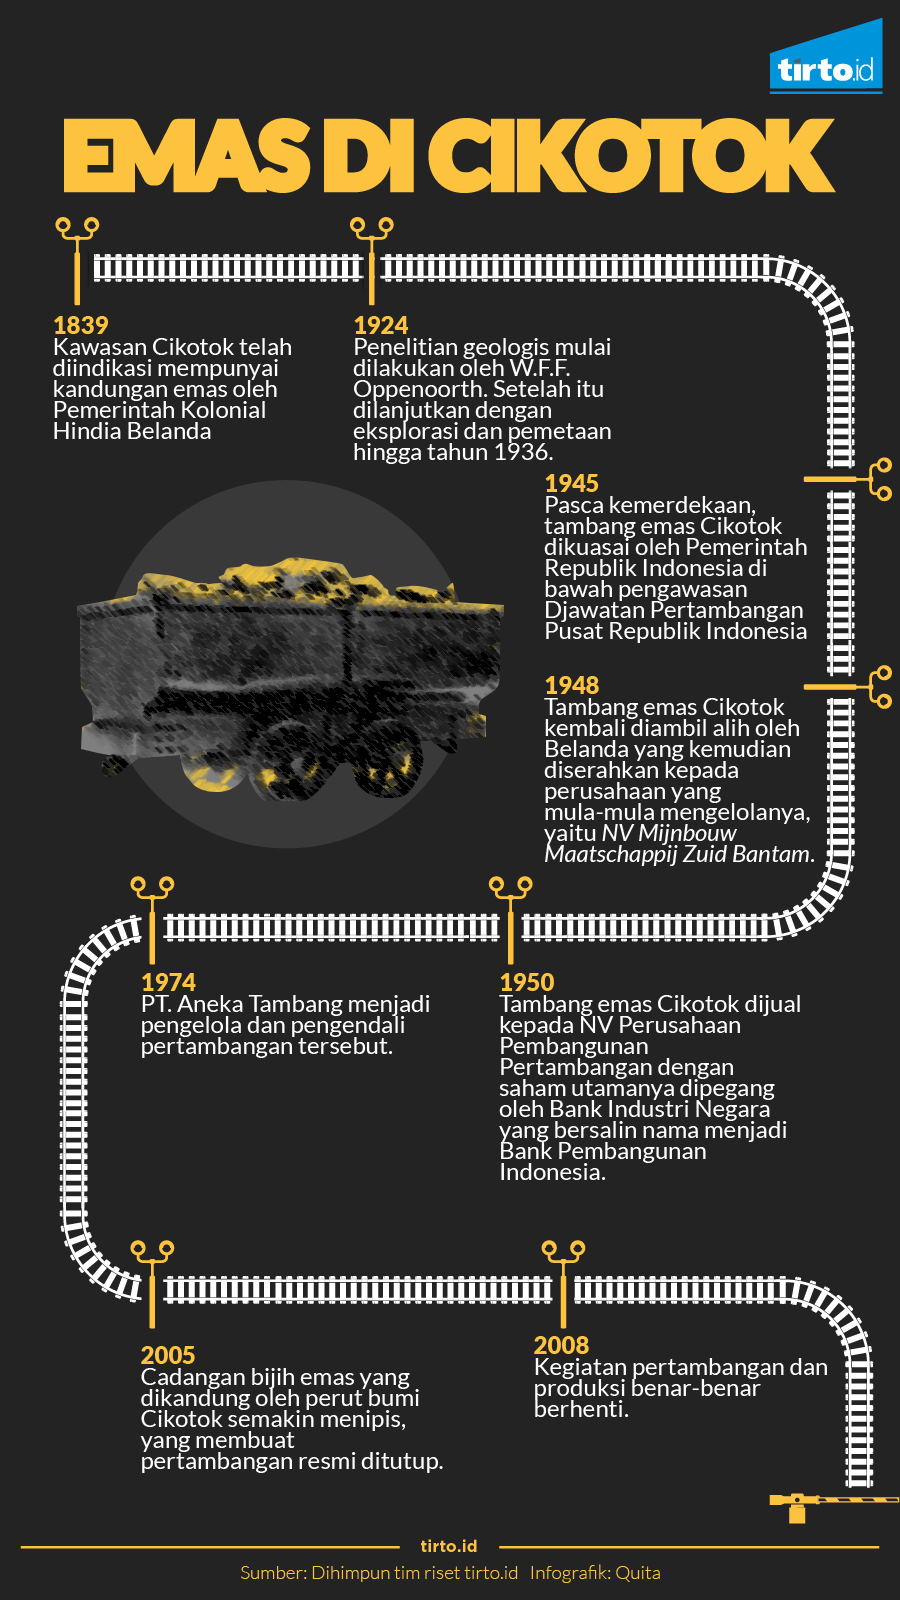 Infografik Emas di Cikotok